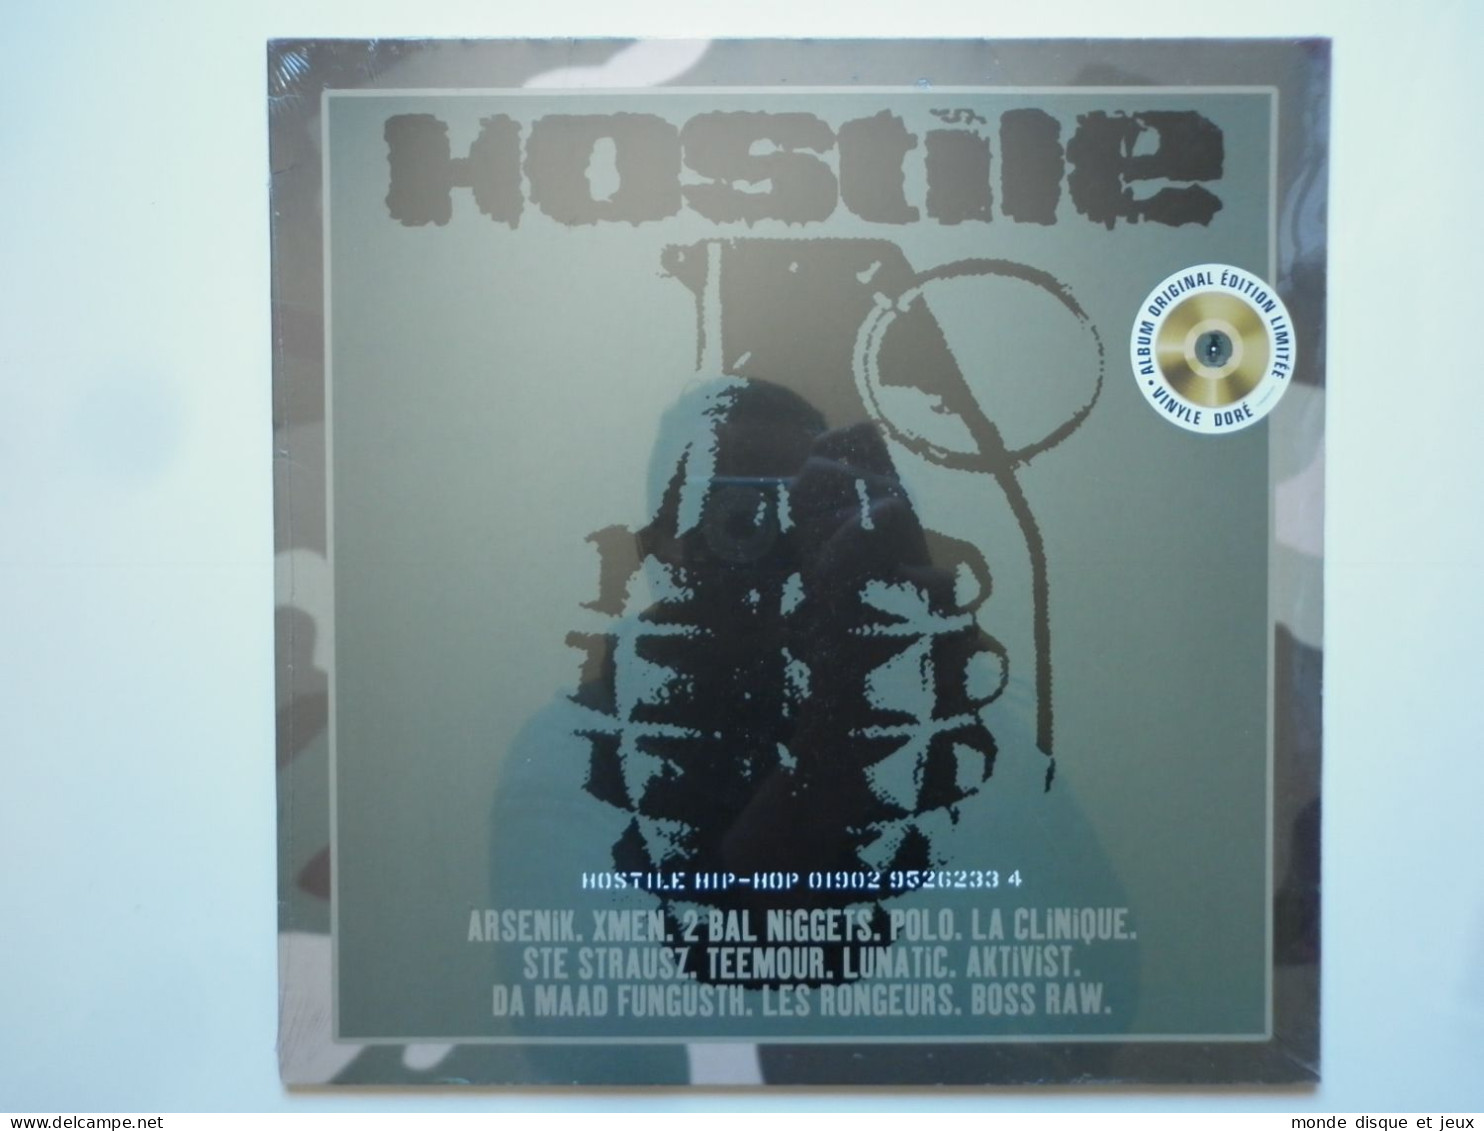 Arsenik / La Clinique / Lunatic / Polo Album 33Tours Vinyle Hostile Hip-Hop Vinyle Couleur Doré Gold - Altri - Francese